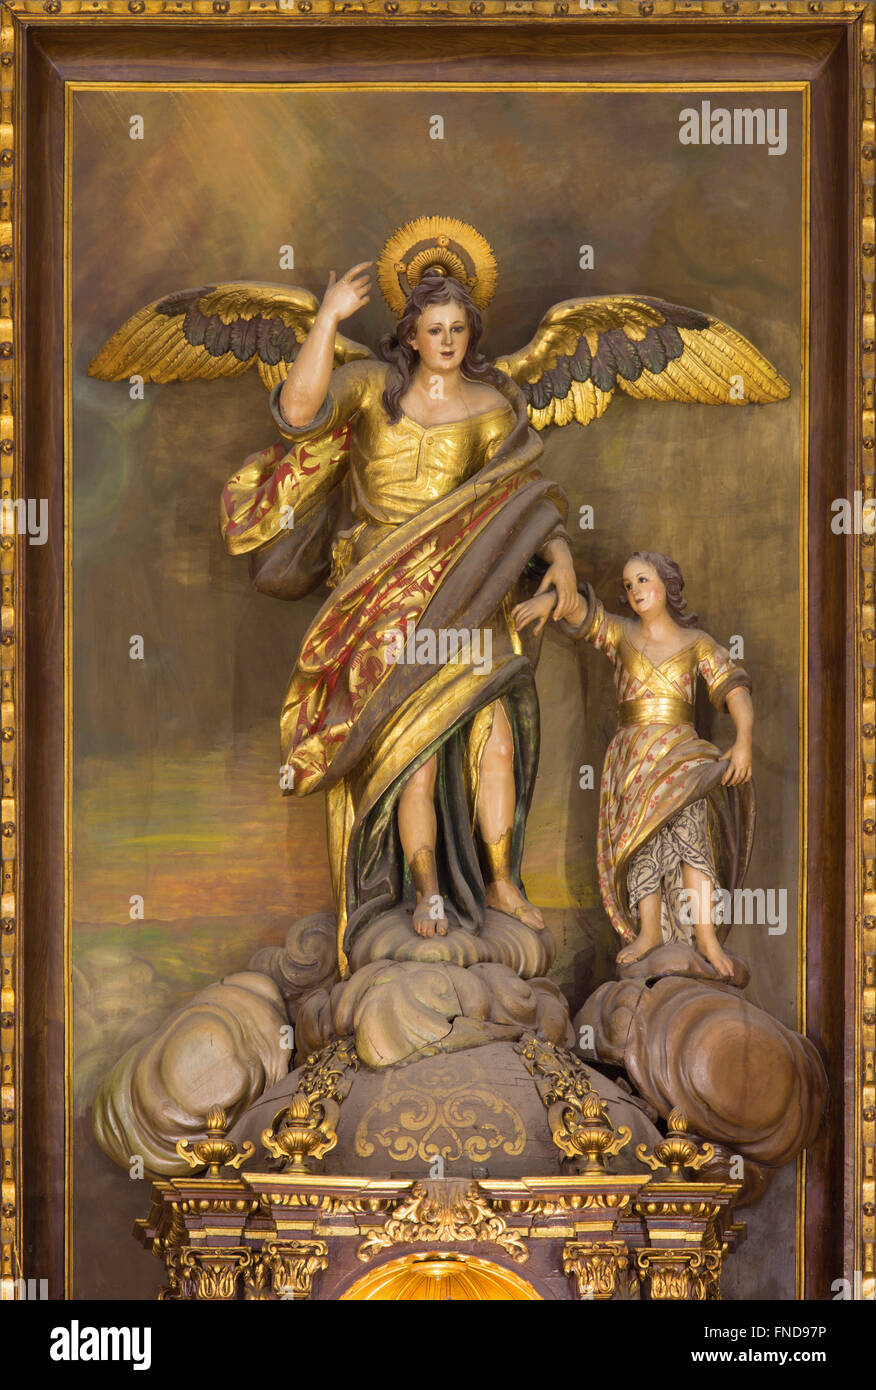 CORDOBA, Spanien - 27. Mai 2015: Die geschnitzten polychrome Statue des Erzengels Raphael (Santo Angel) Patron der Stadt vom 18. Jhdt. Stockfoto